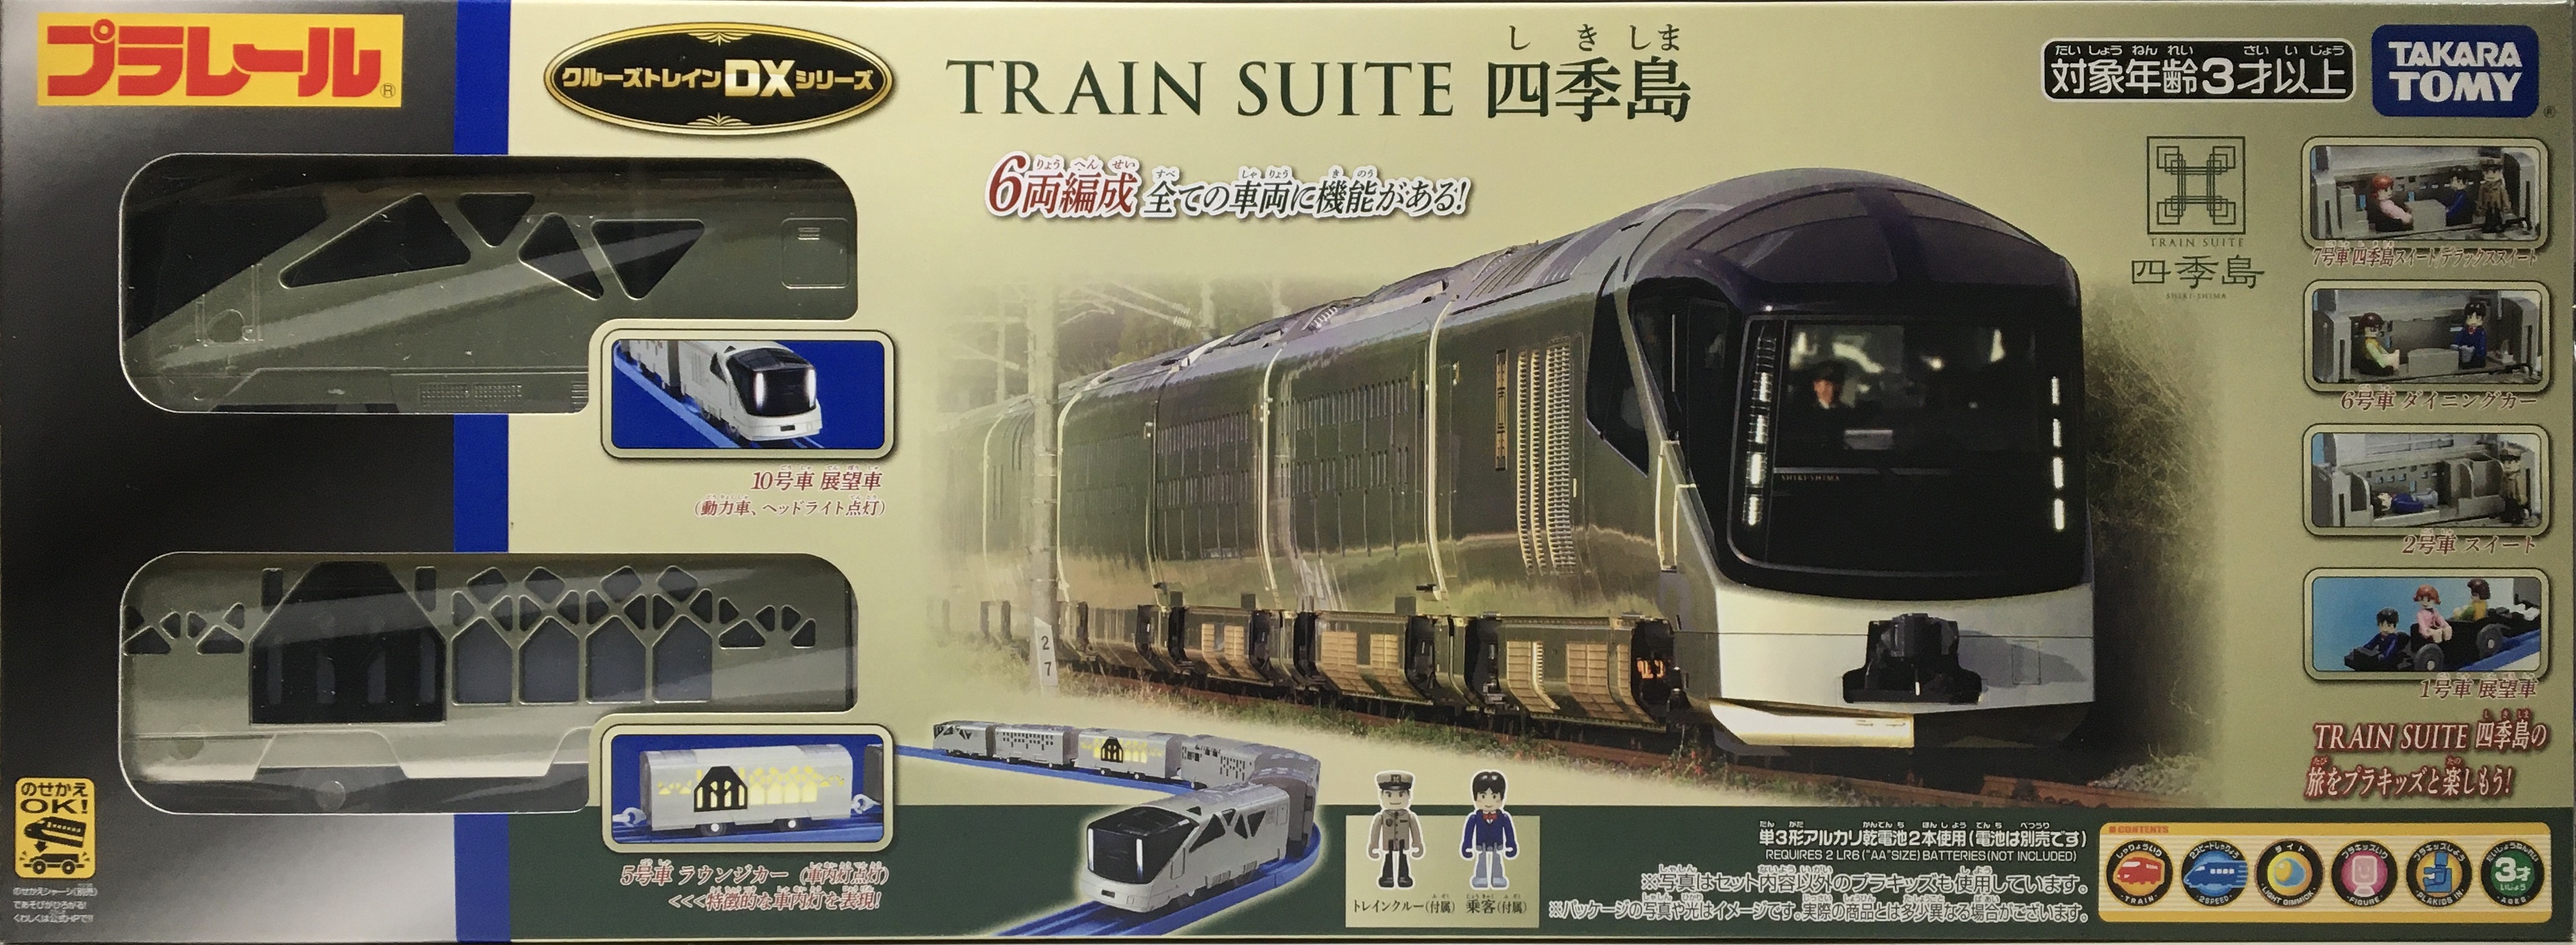 プラレール クルーズトレインDXシリーズ TRAIN SUITE 四季島 通販